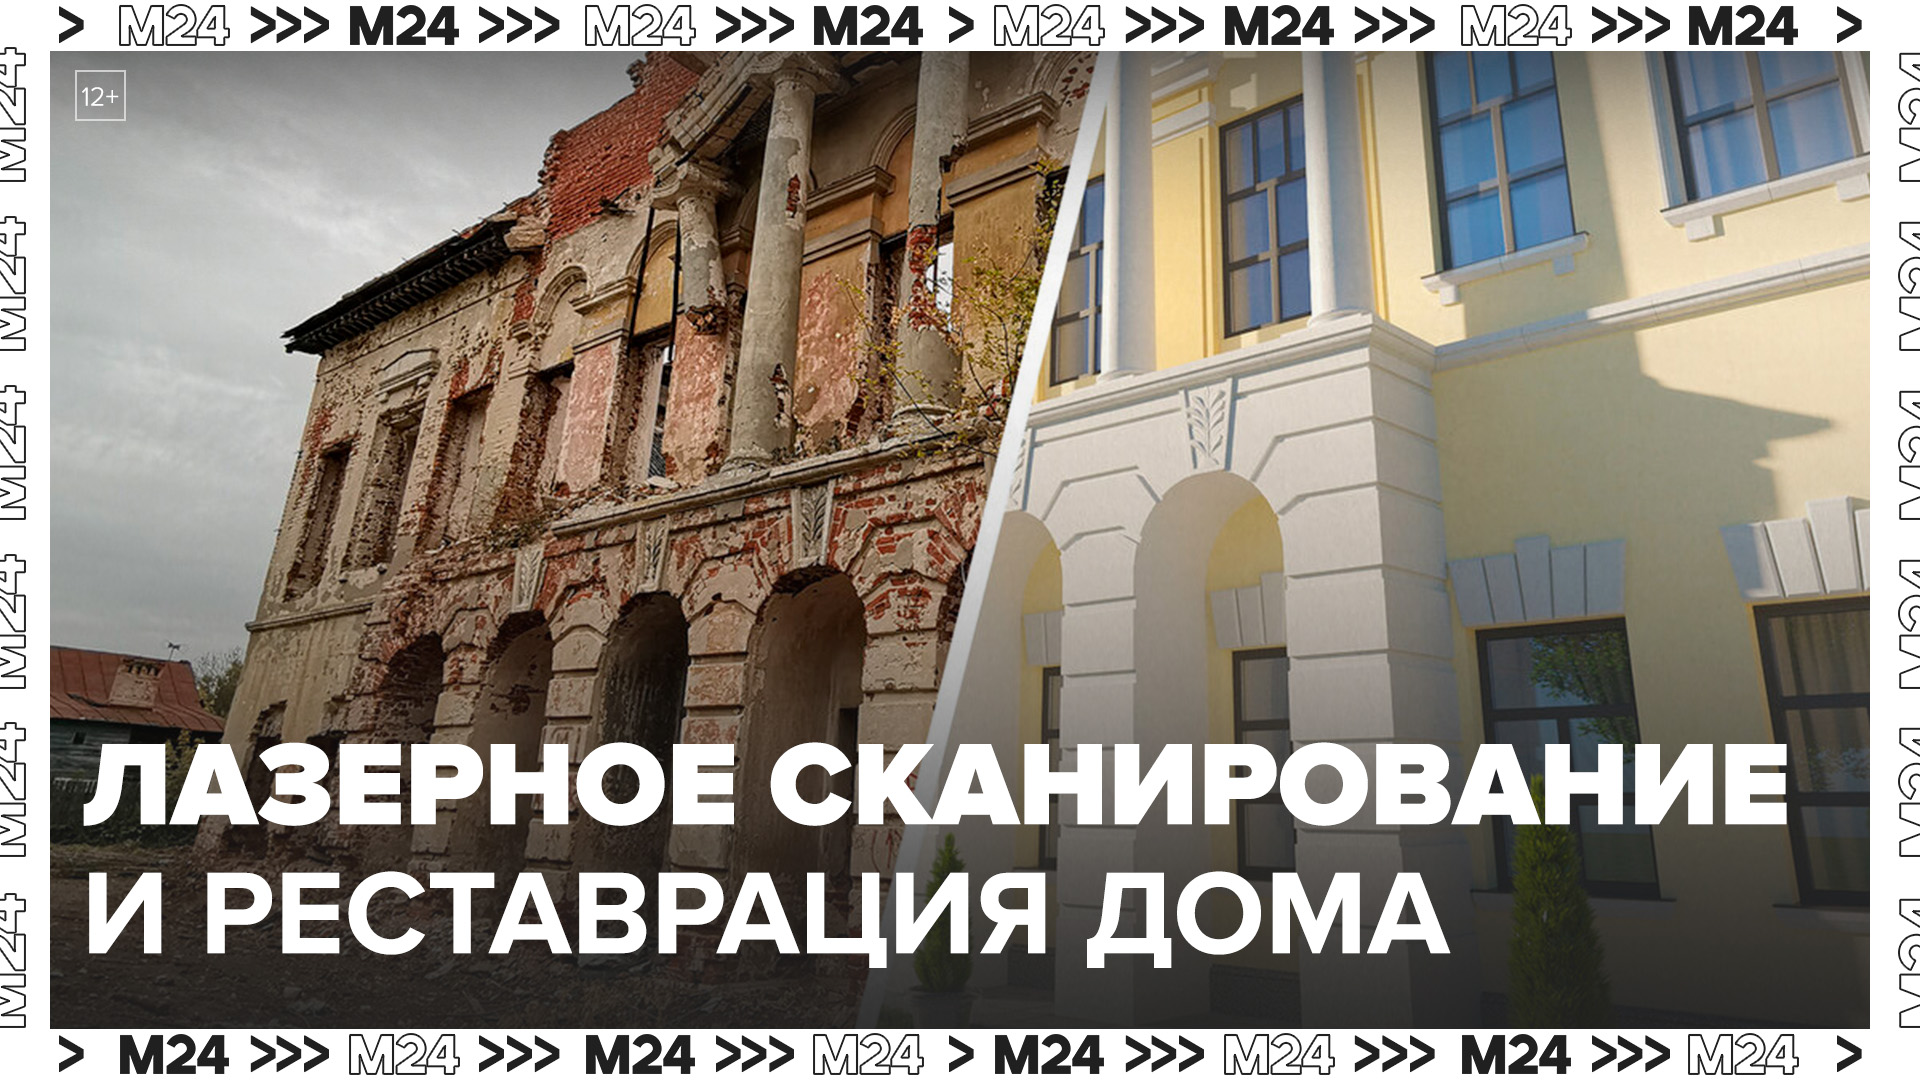 Лазерное сканирование использовали для реставрации дома страхового общества "Россия" - Москва 24